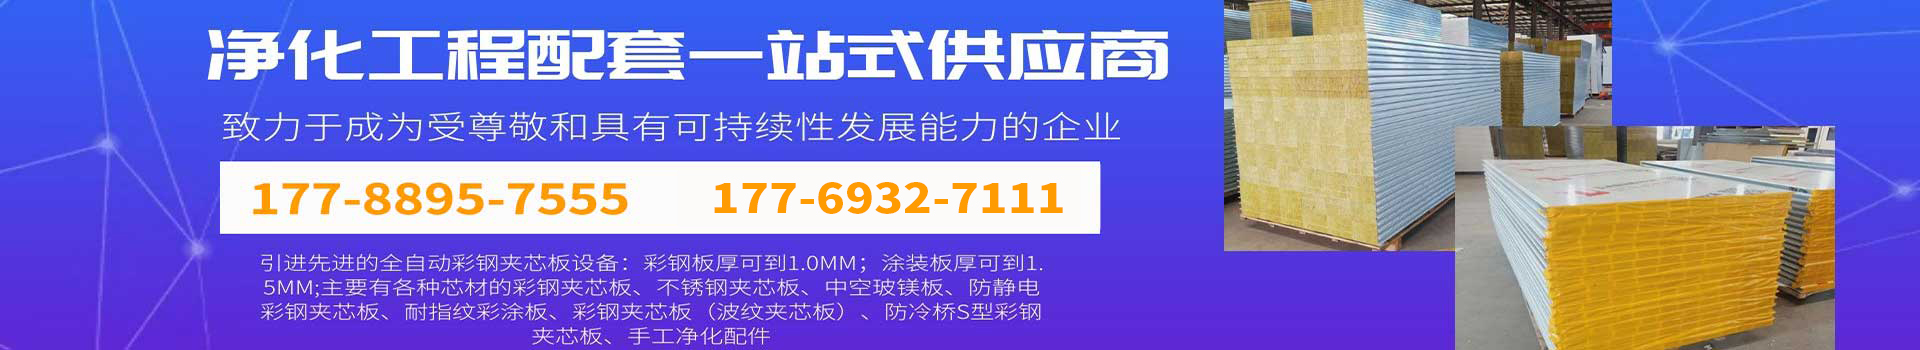 网投app(中国)有限公司官网